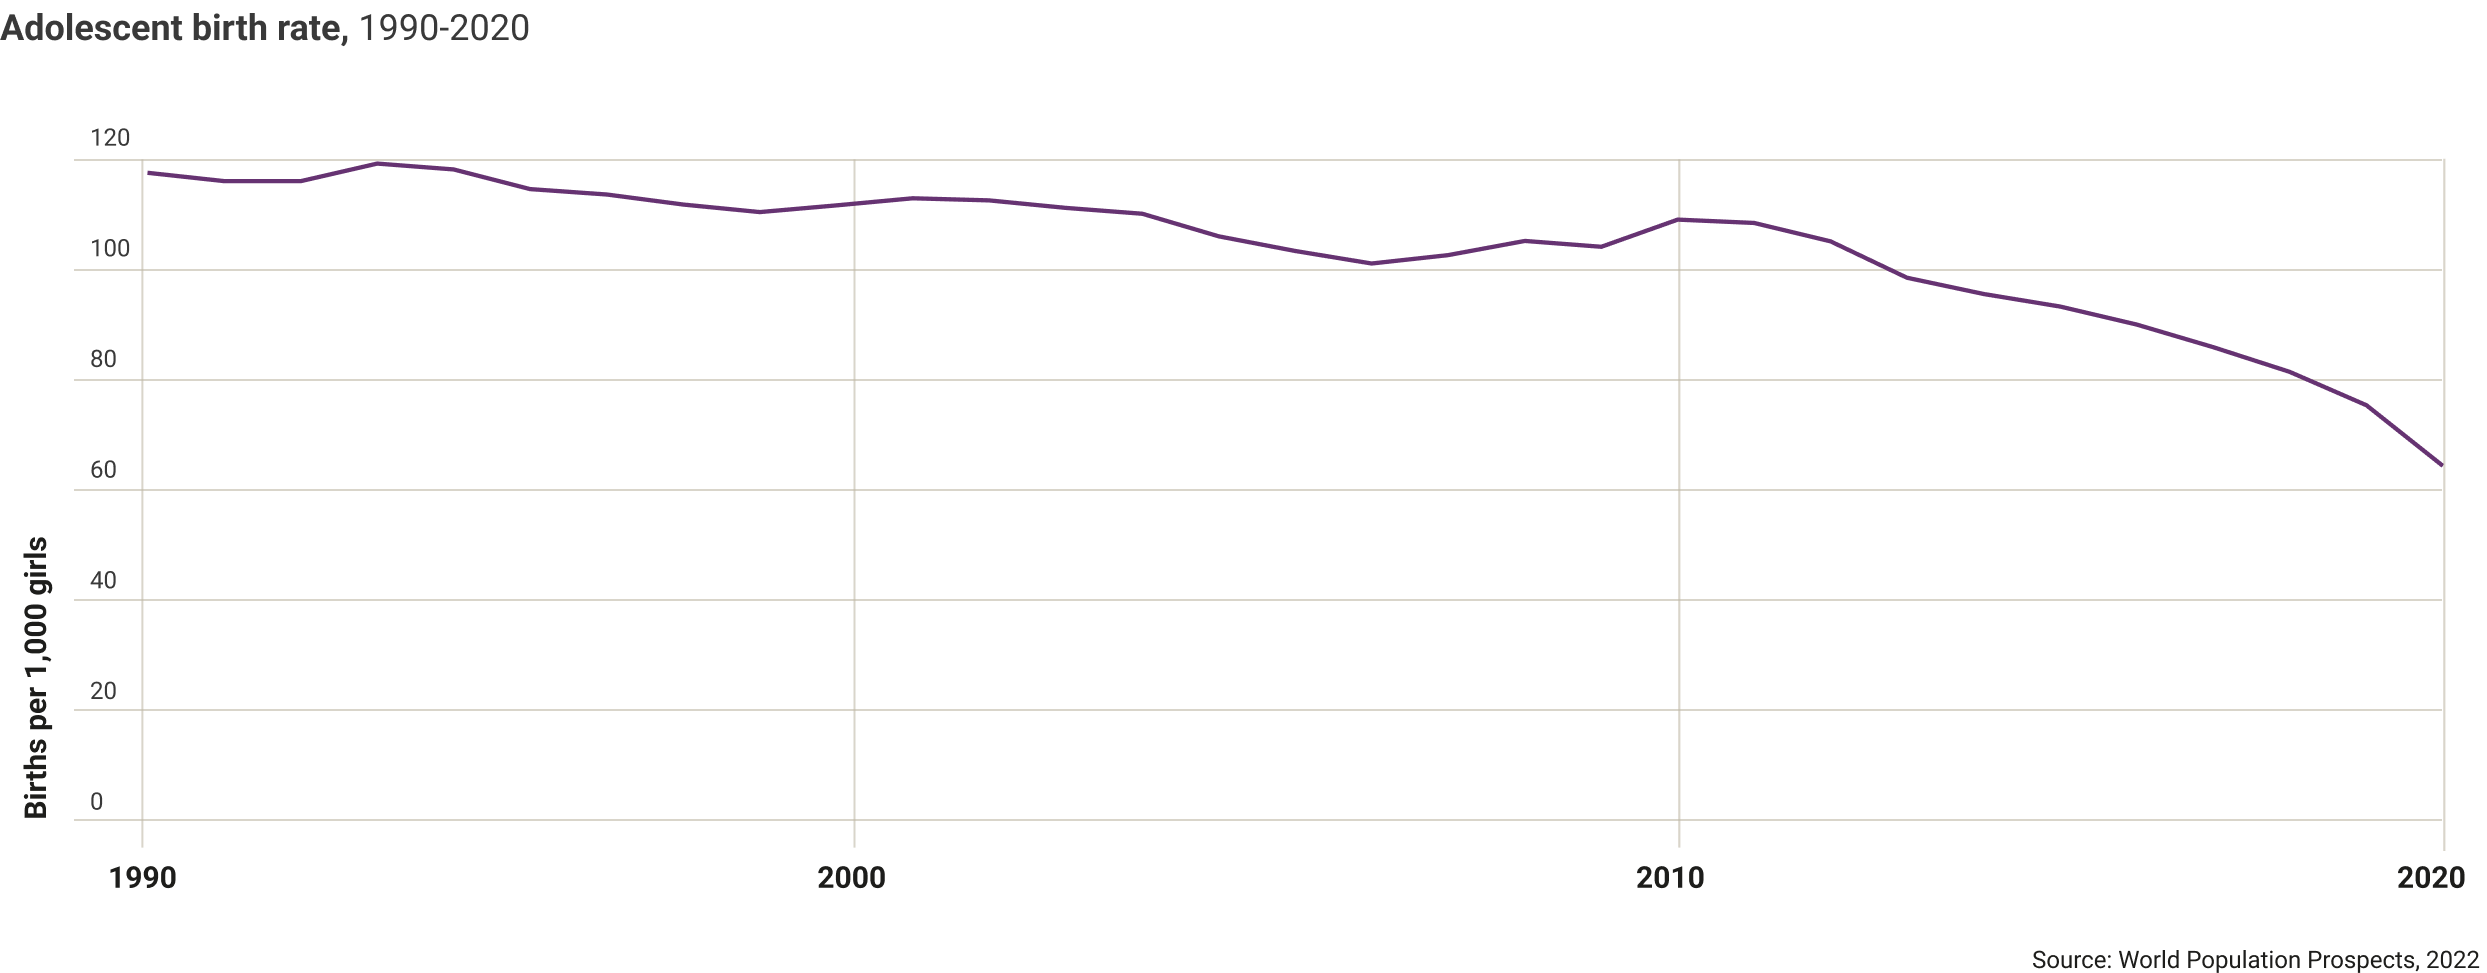 dominican-republic-adolescence-birth-rate-1990-2020